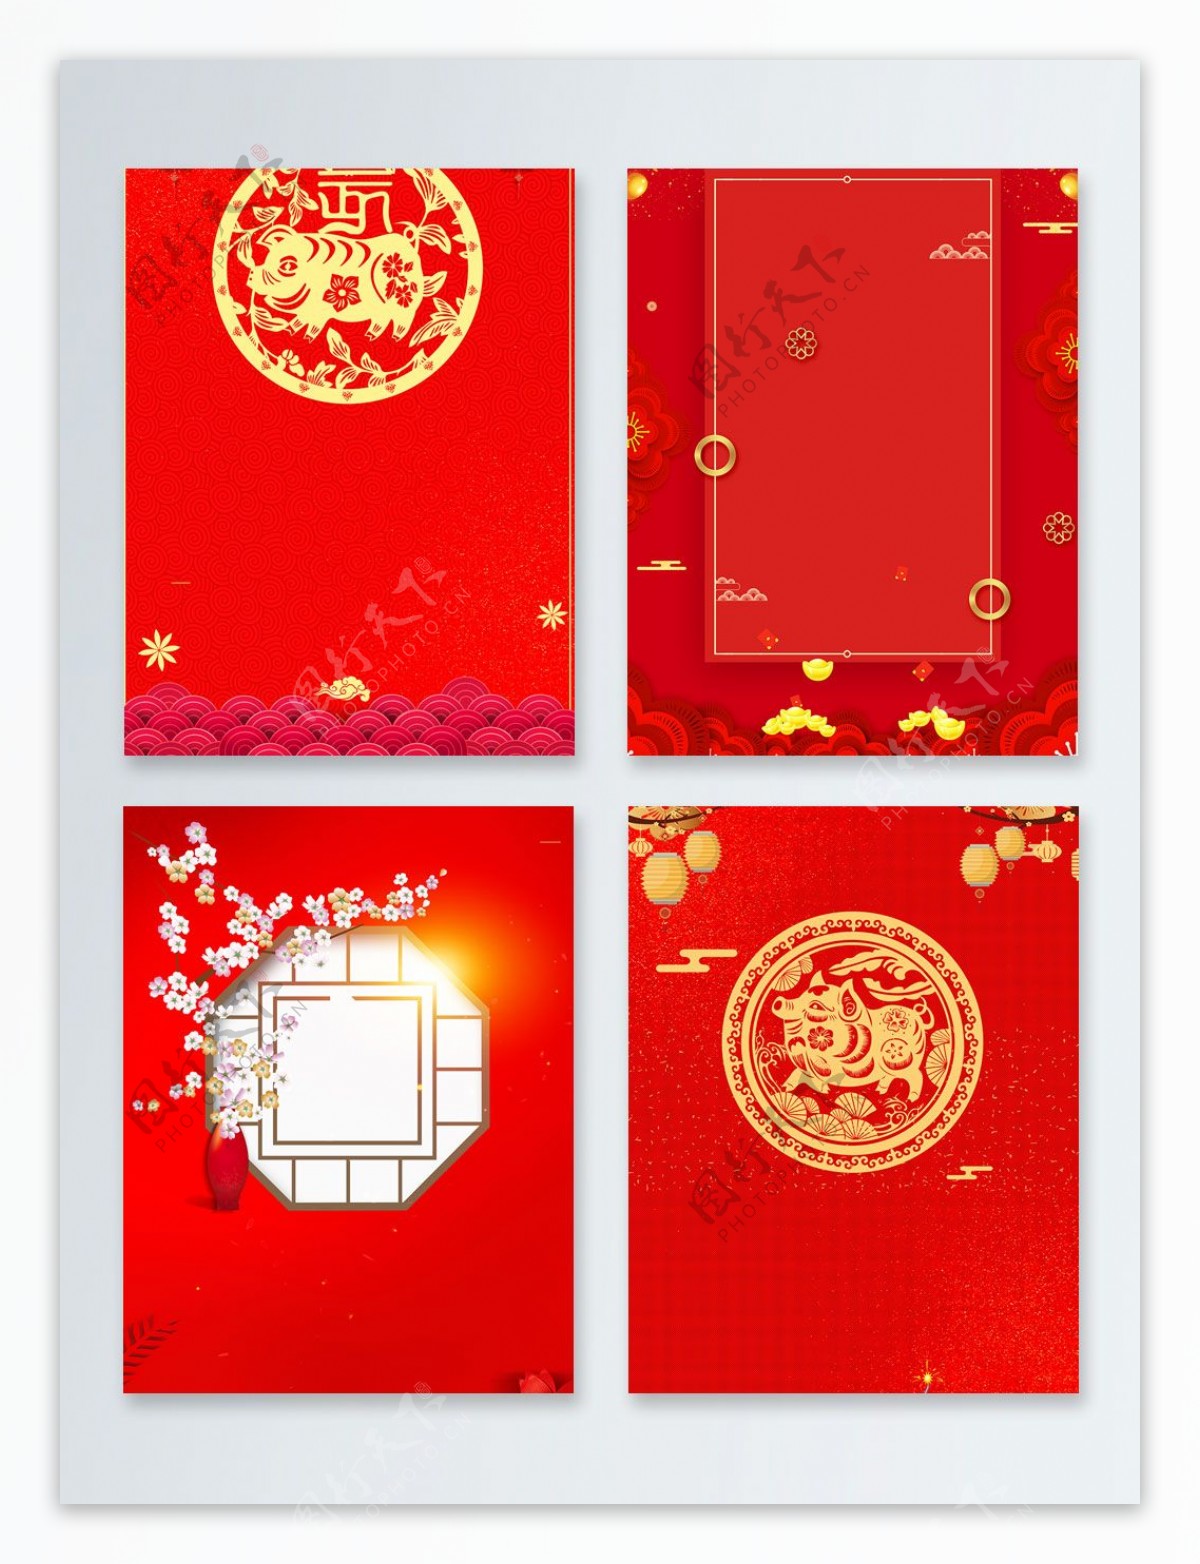 剪纸猪传统节日新年快乐广告背景图